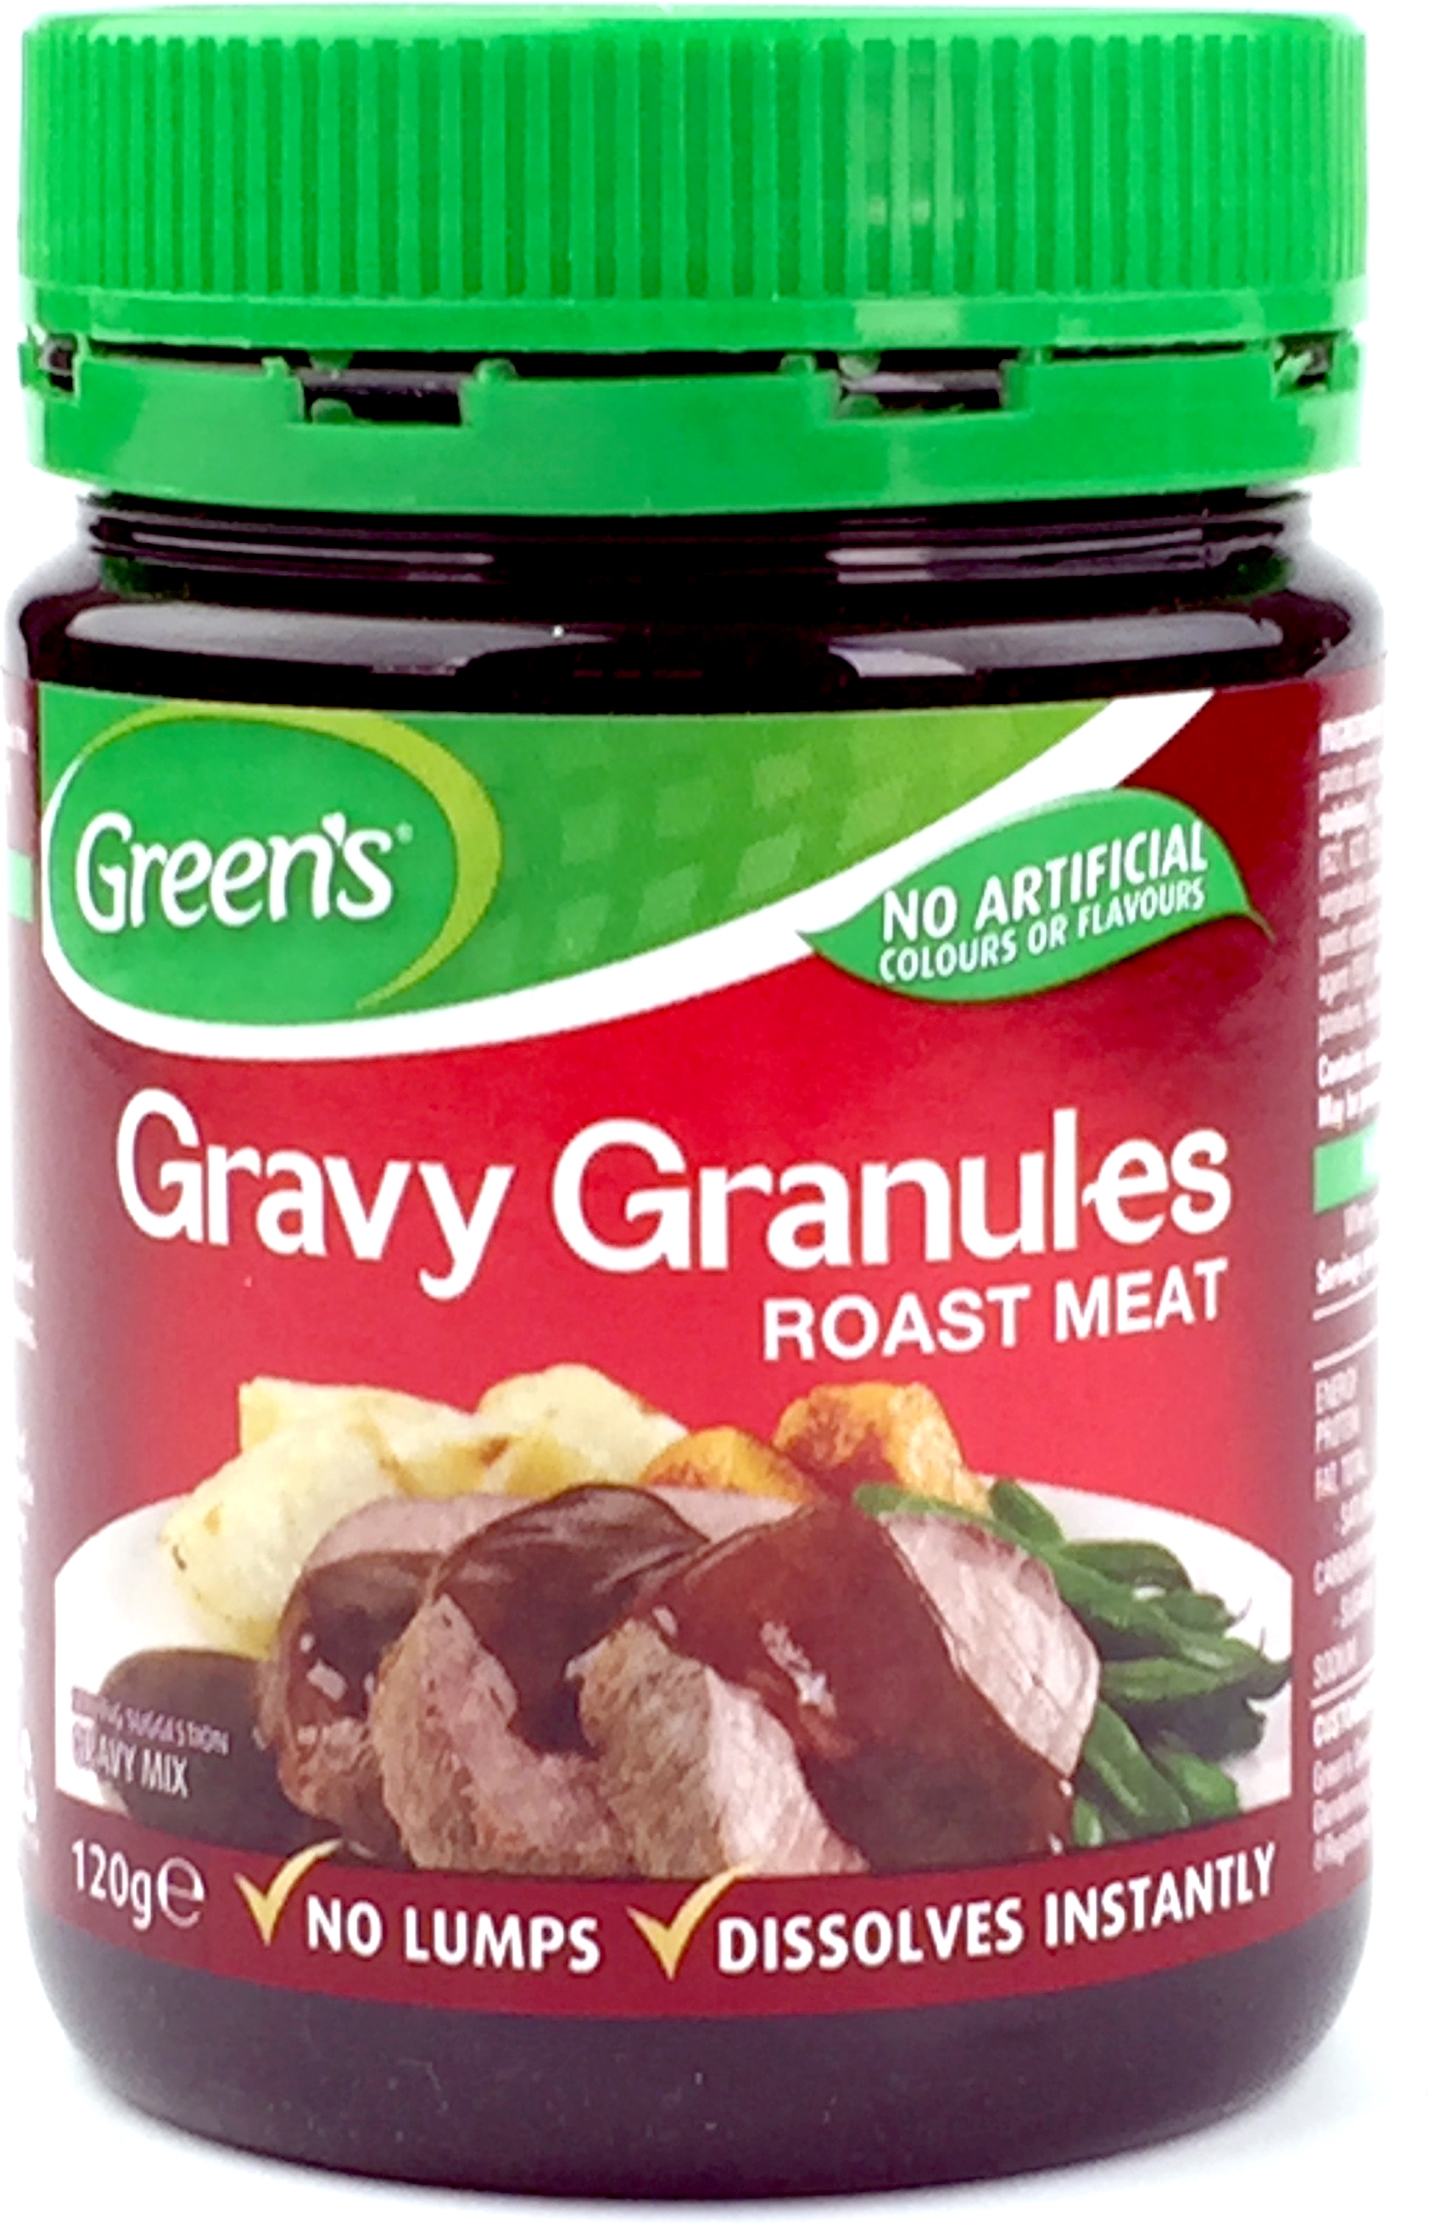 Green's Gravy Granules for Roast Meat 120g